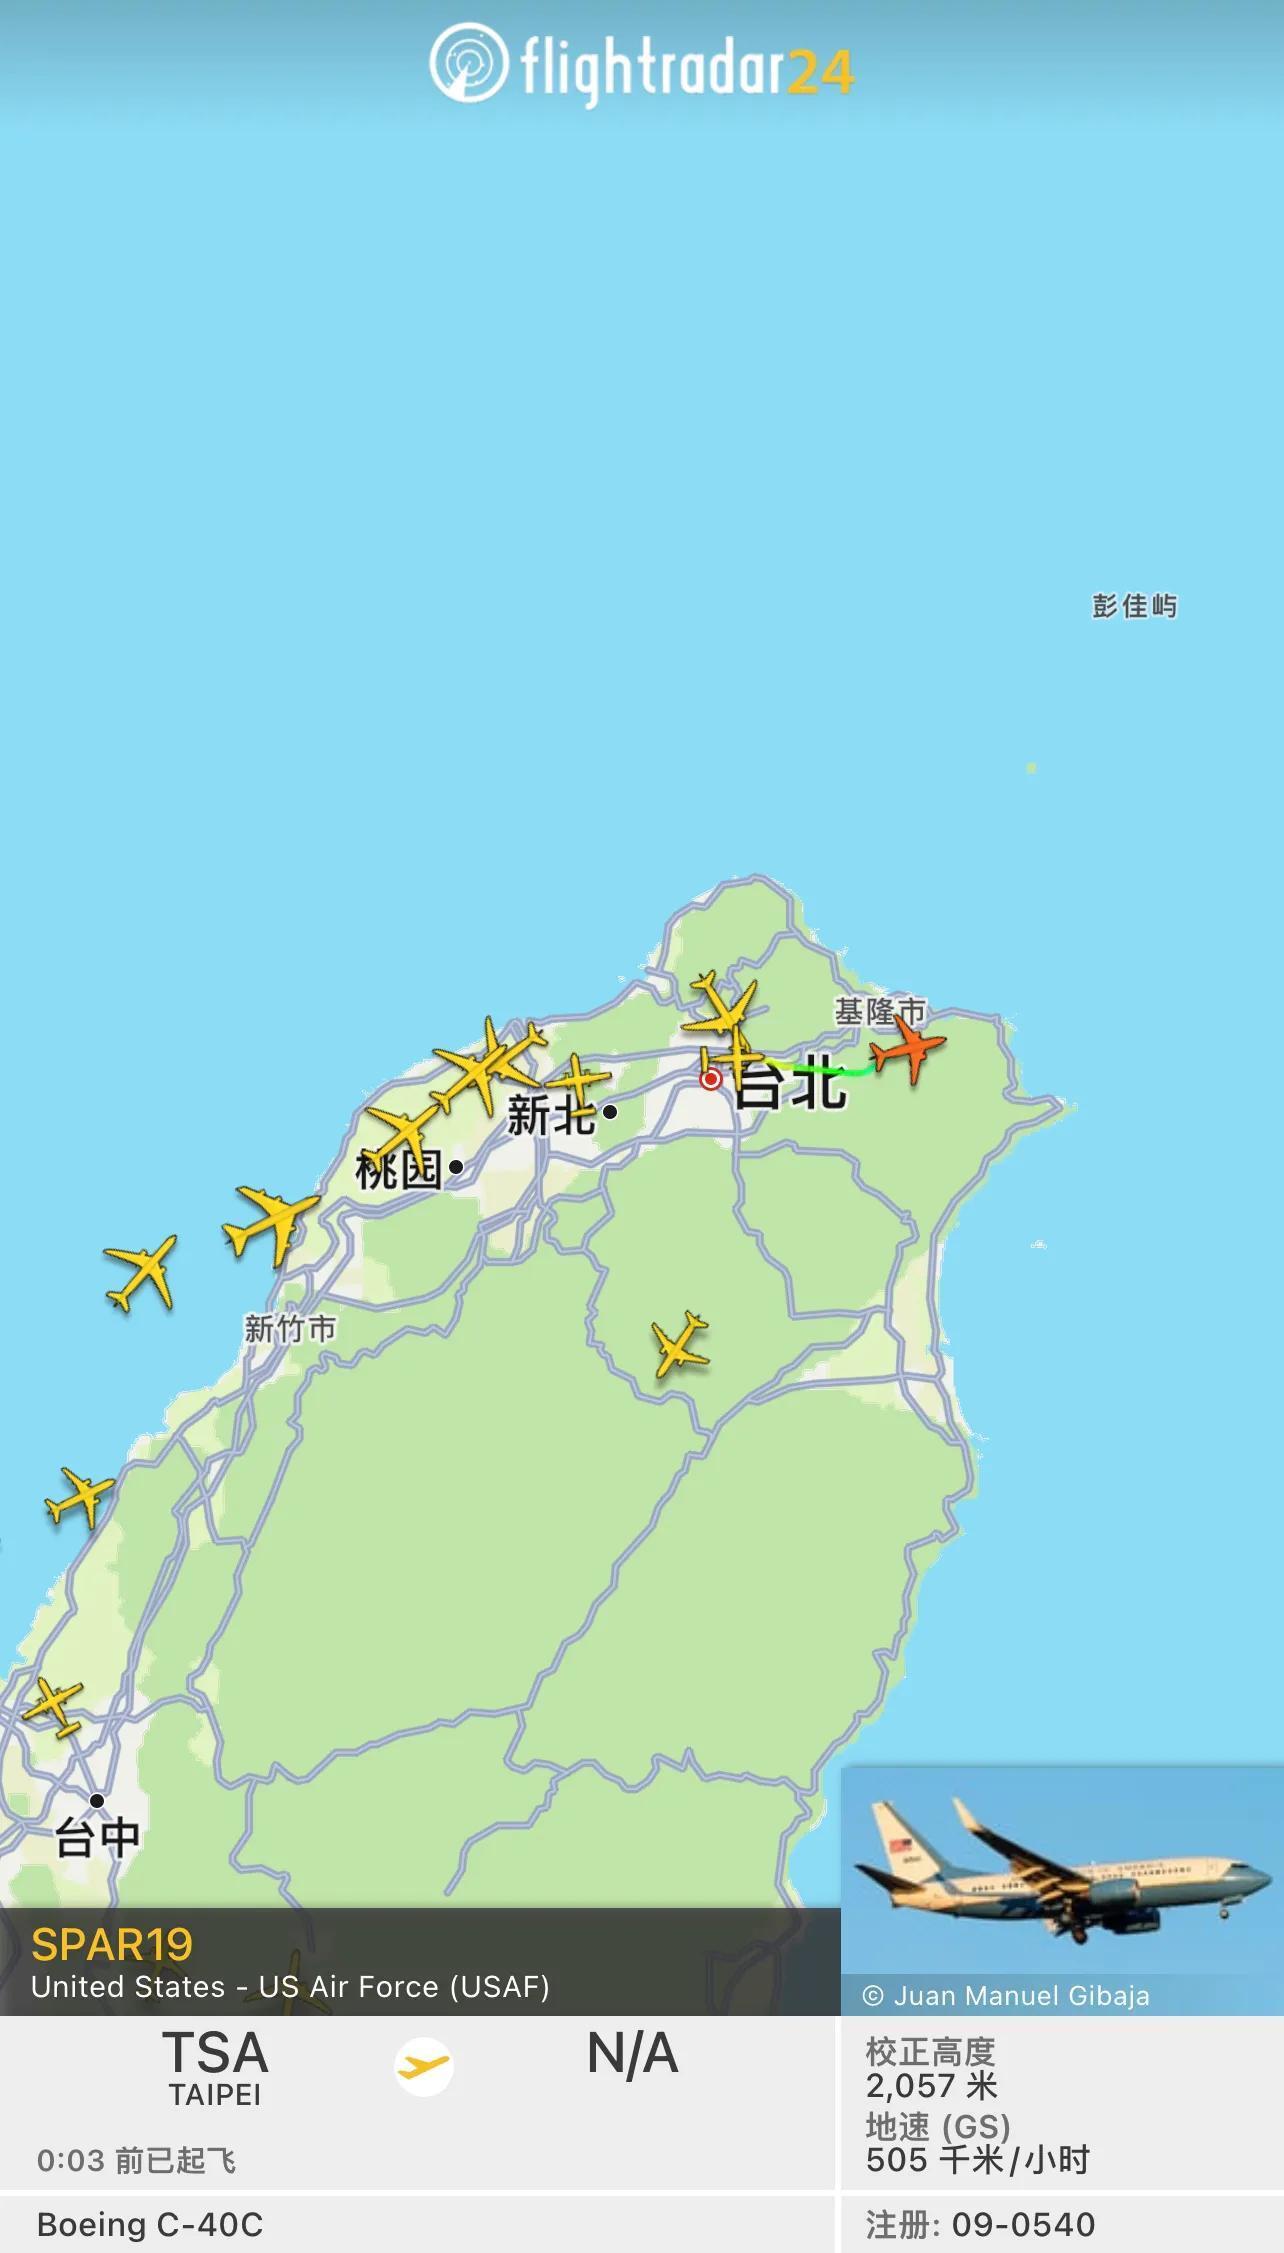 佩洛西搭机离开台湾是怎么回事，关于佩洛西搭机离开台湾直播的新消息。